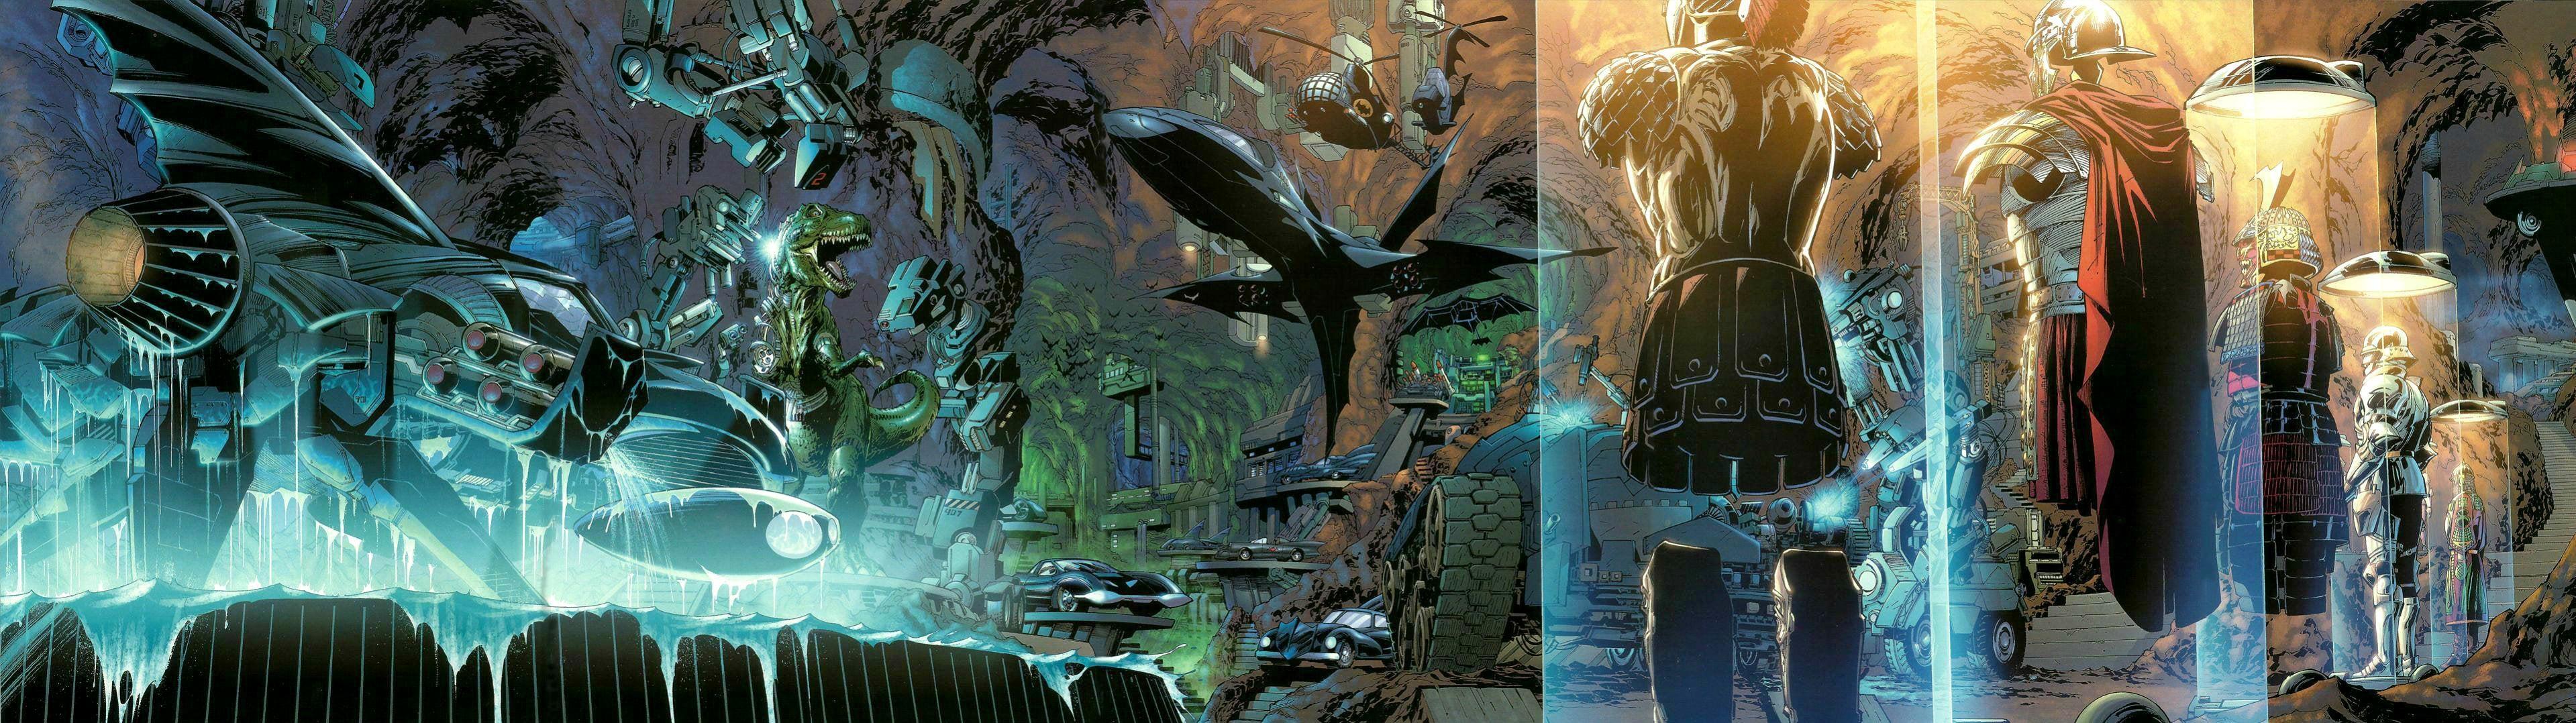 A Dual Screen Wallpaper Of The Batcave R Batman